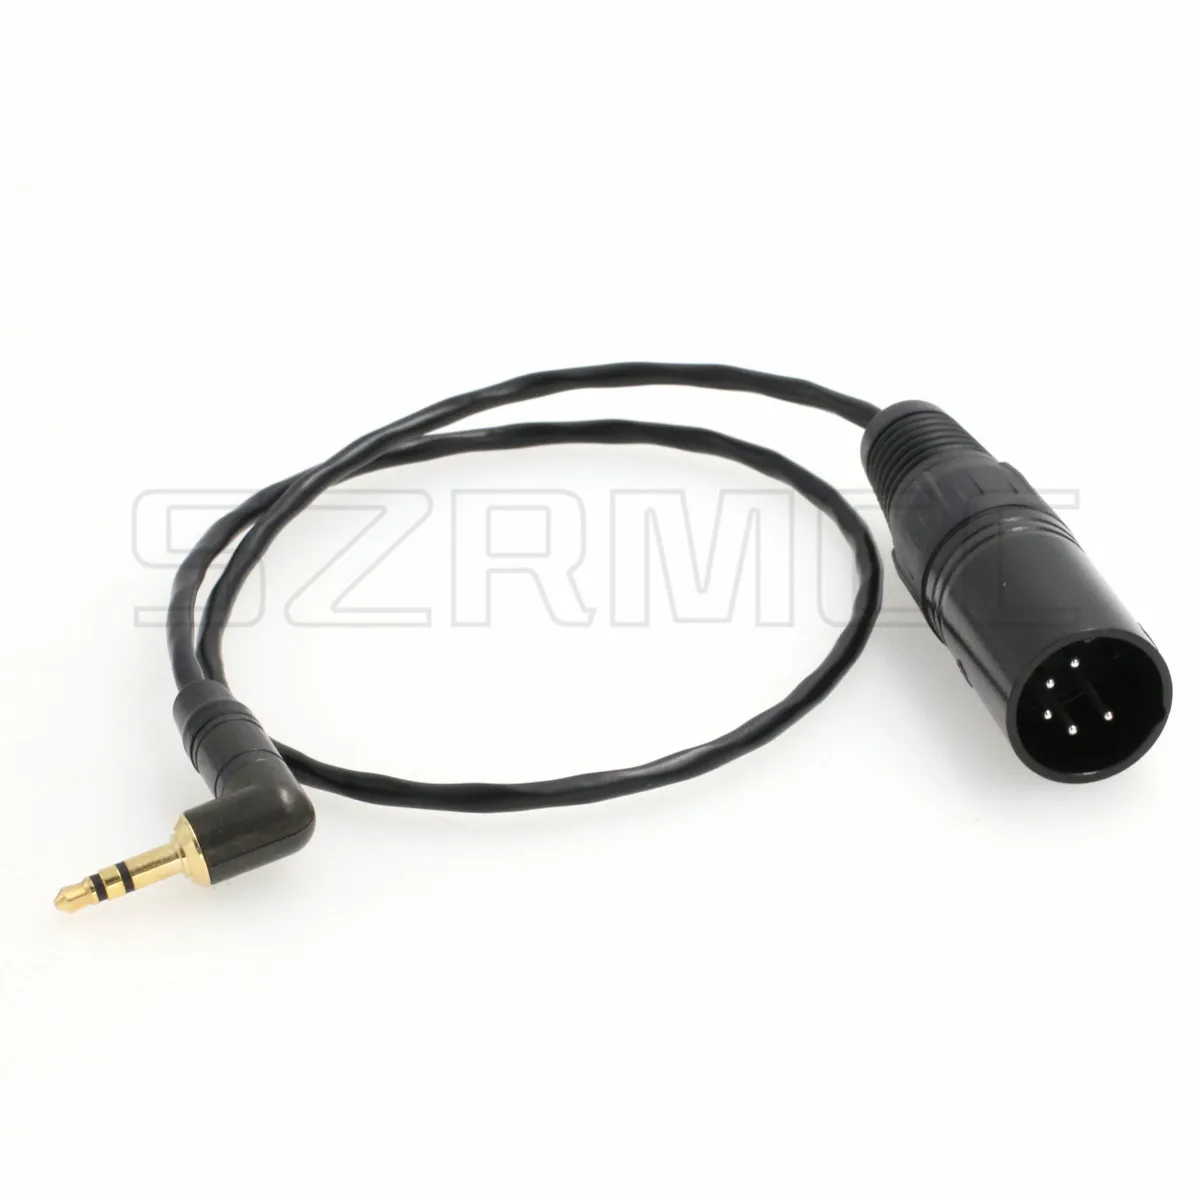 Cable de entrada de Audio estéreo de 3,5mm a XLR de 5 pines macho para cámara Arri Alexa XT/SXT/Amira